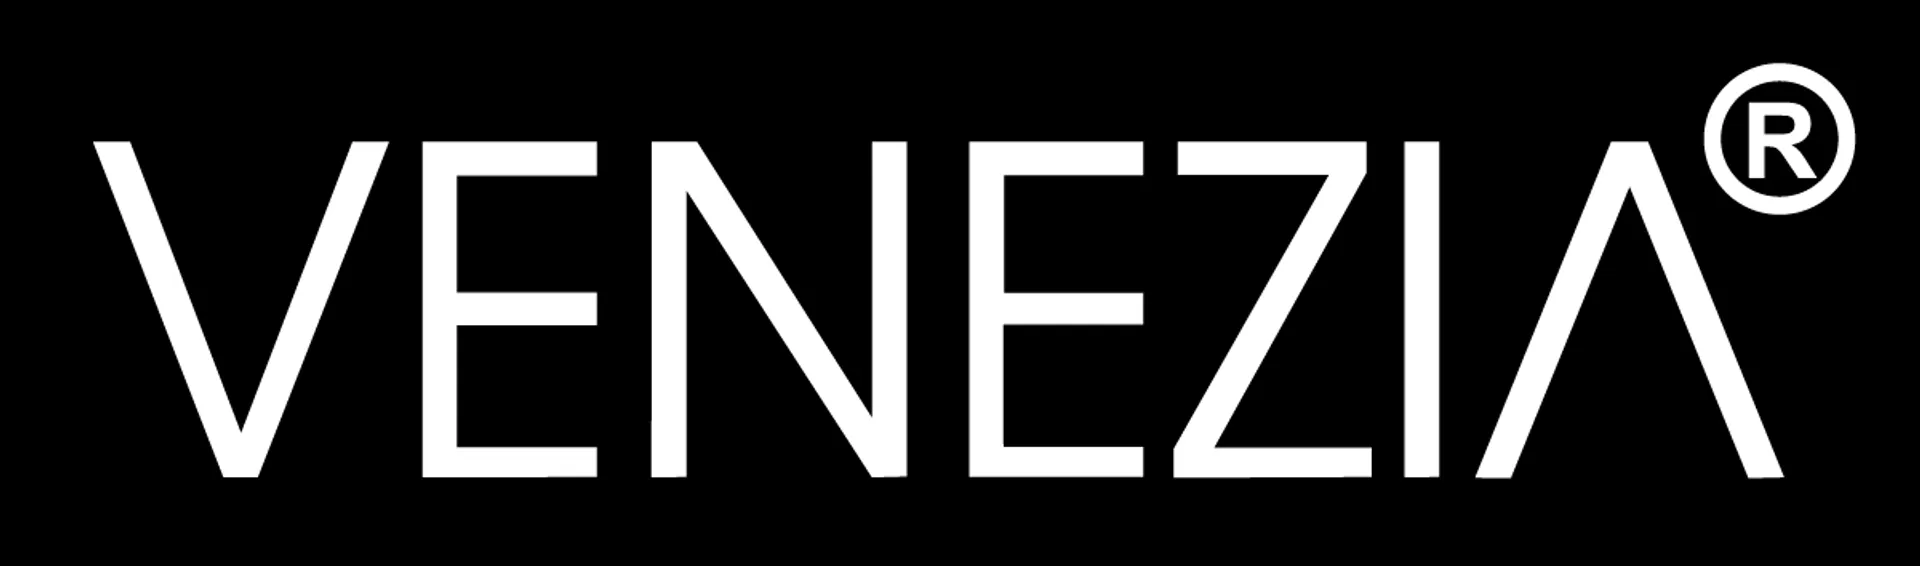 VENEZIA logo